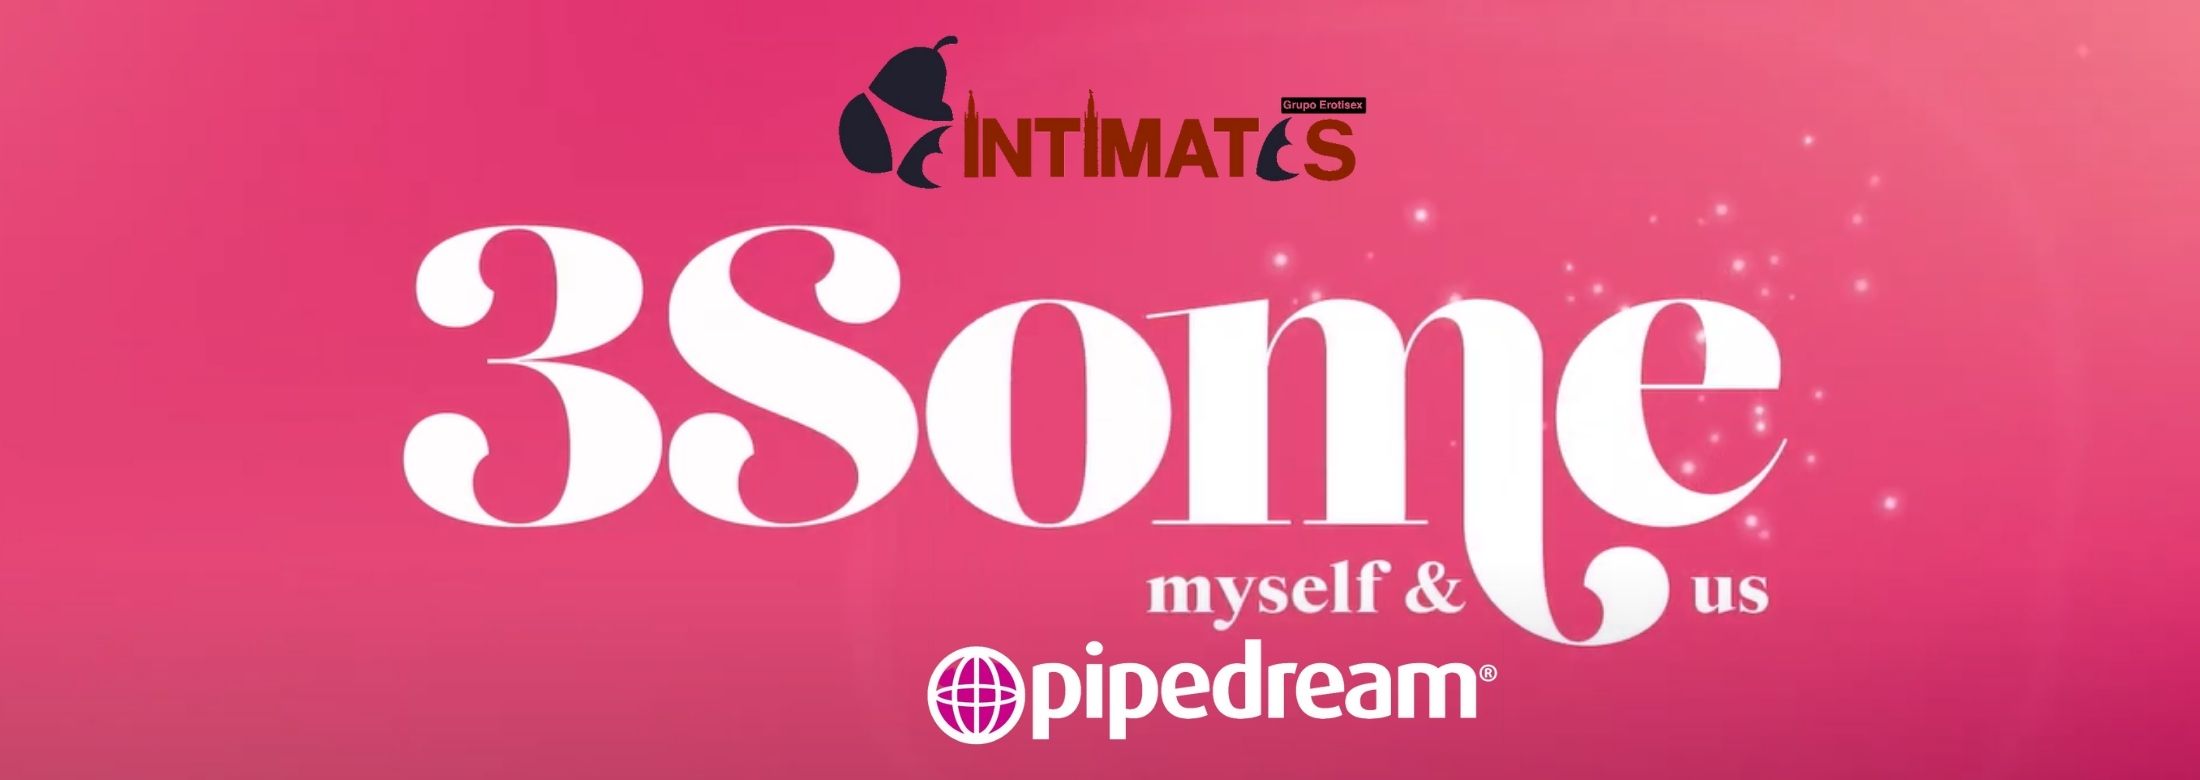 3Some de Pipedream en intimates.es "Tu Personal Shopper Online"